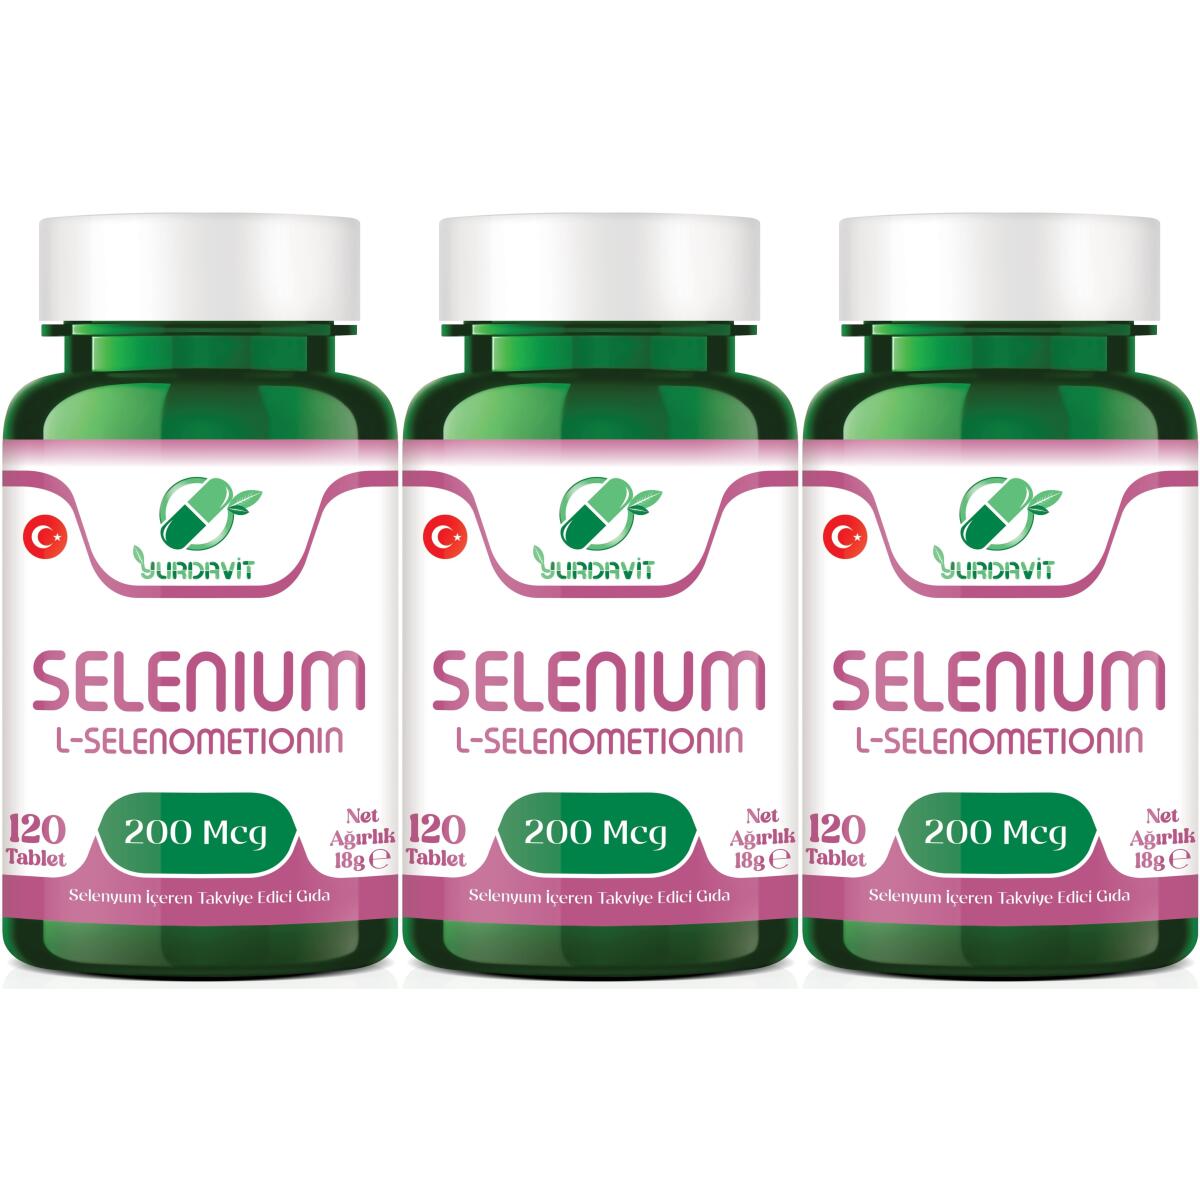 Yurdavit Selenium 200 Mcg Selenyum 3X120 Tablet L-Selenometionin